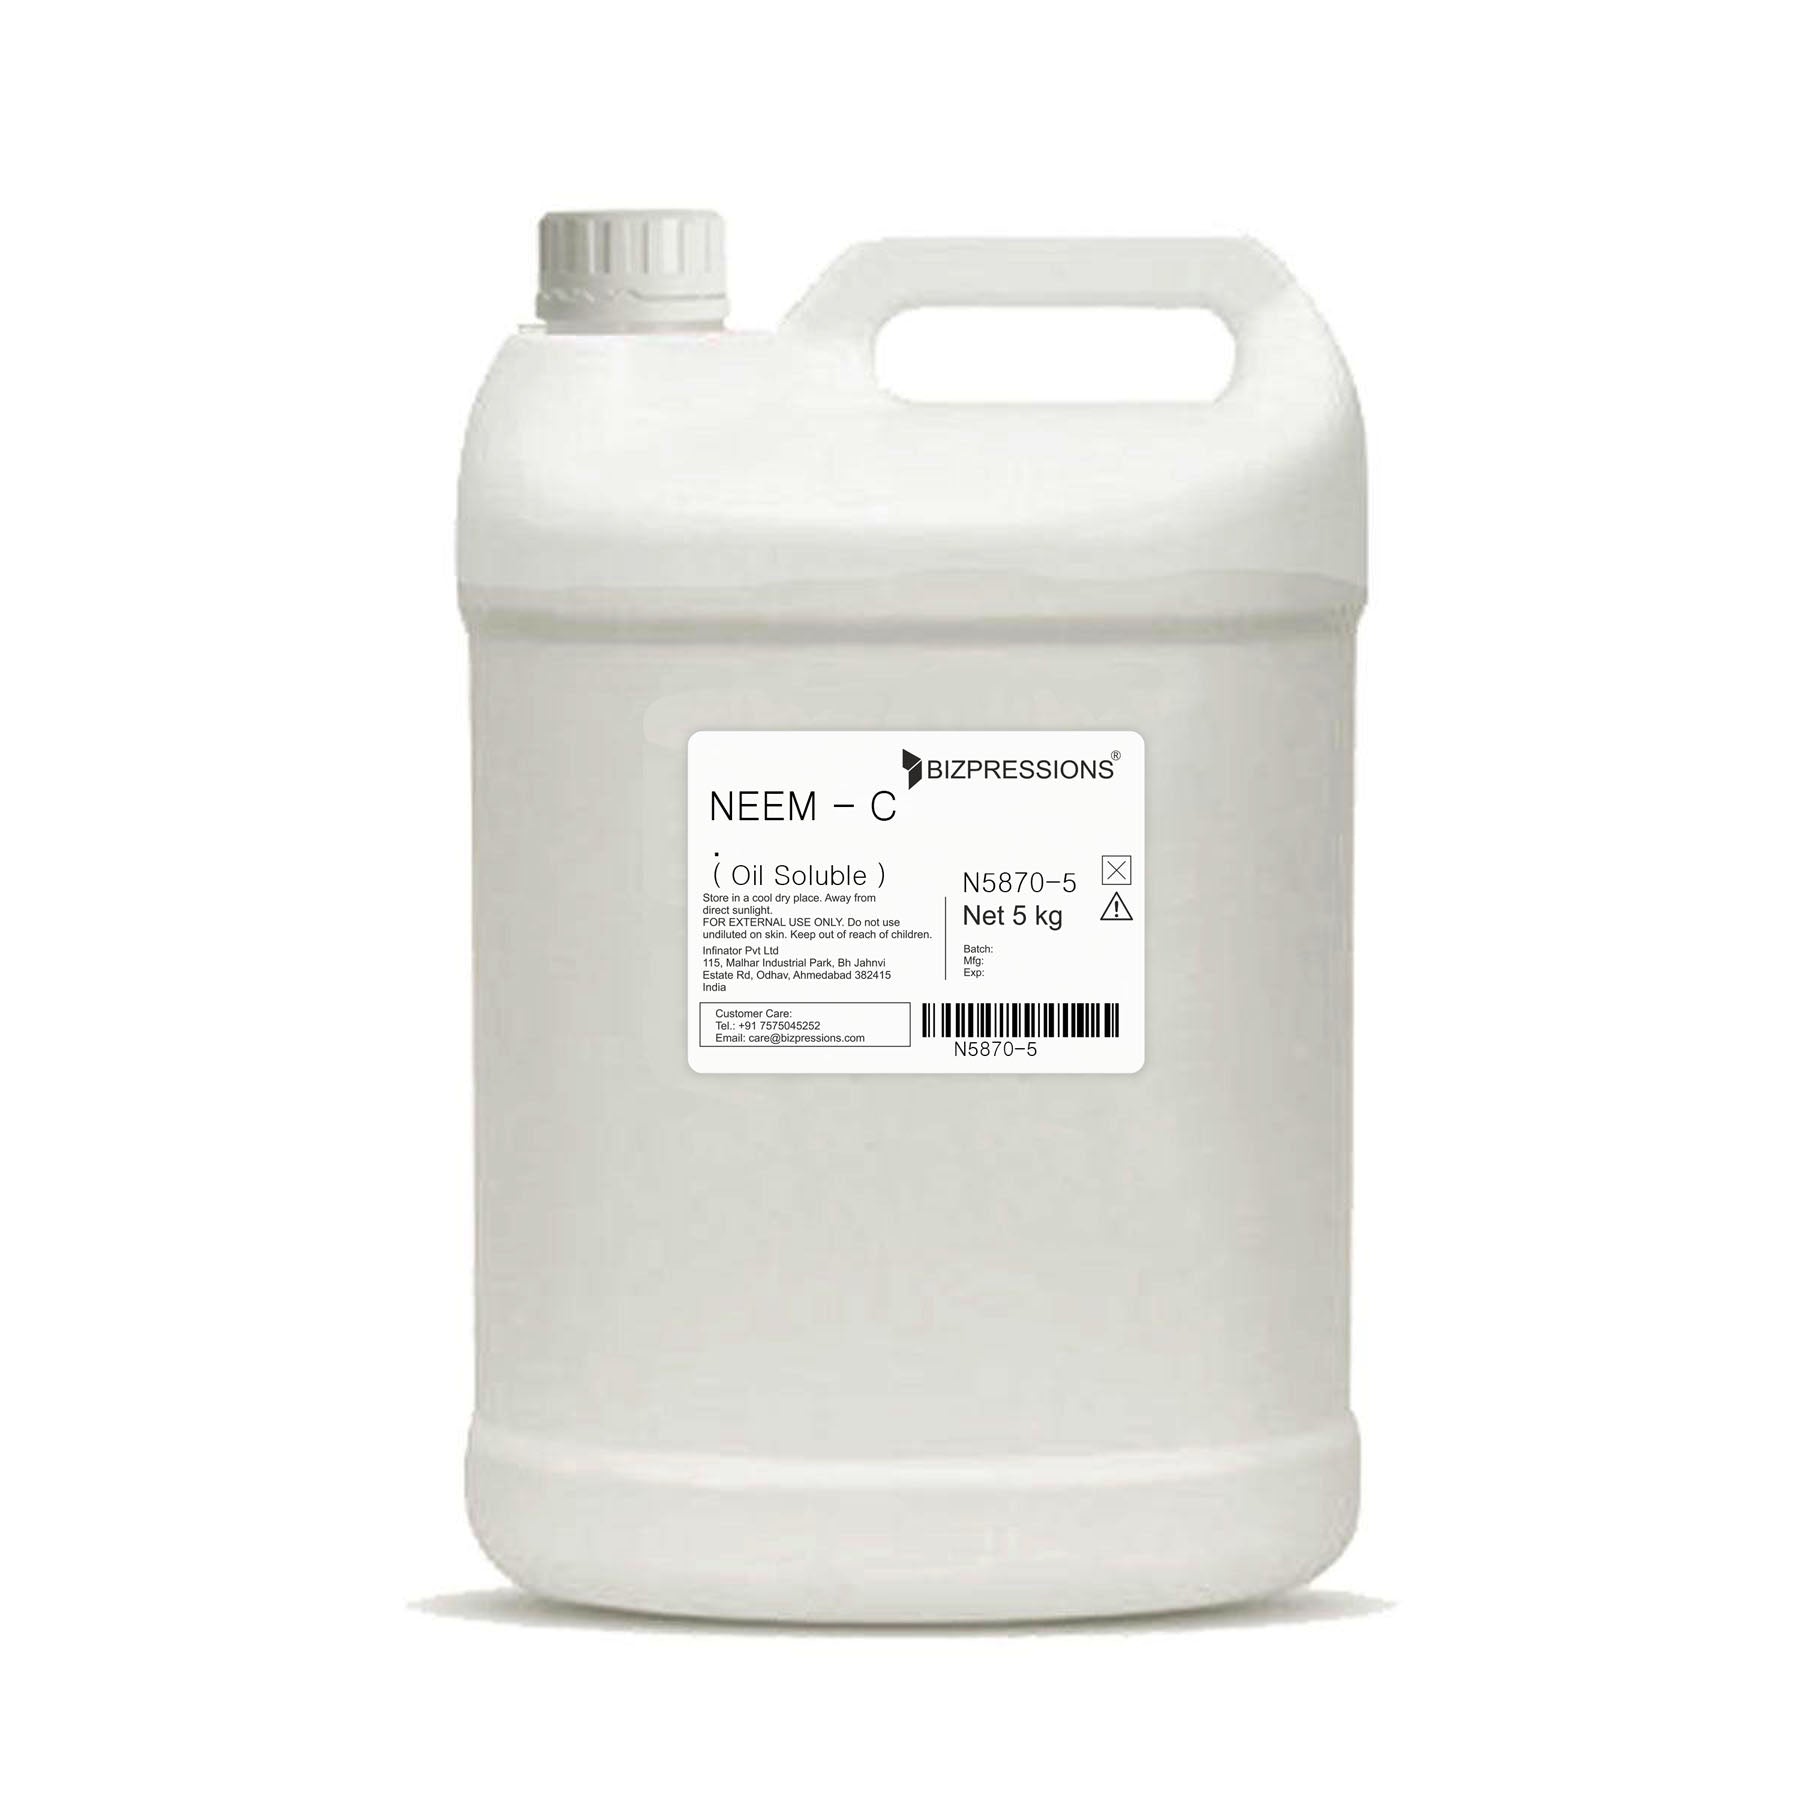 NEEM - C - Fragrance ( Oil Soluble ) - 5 kg